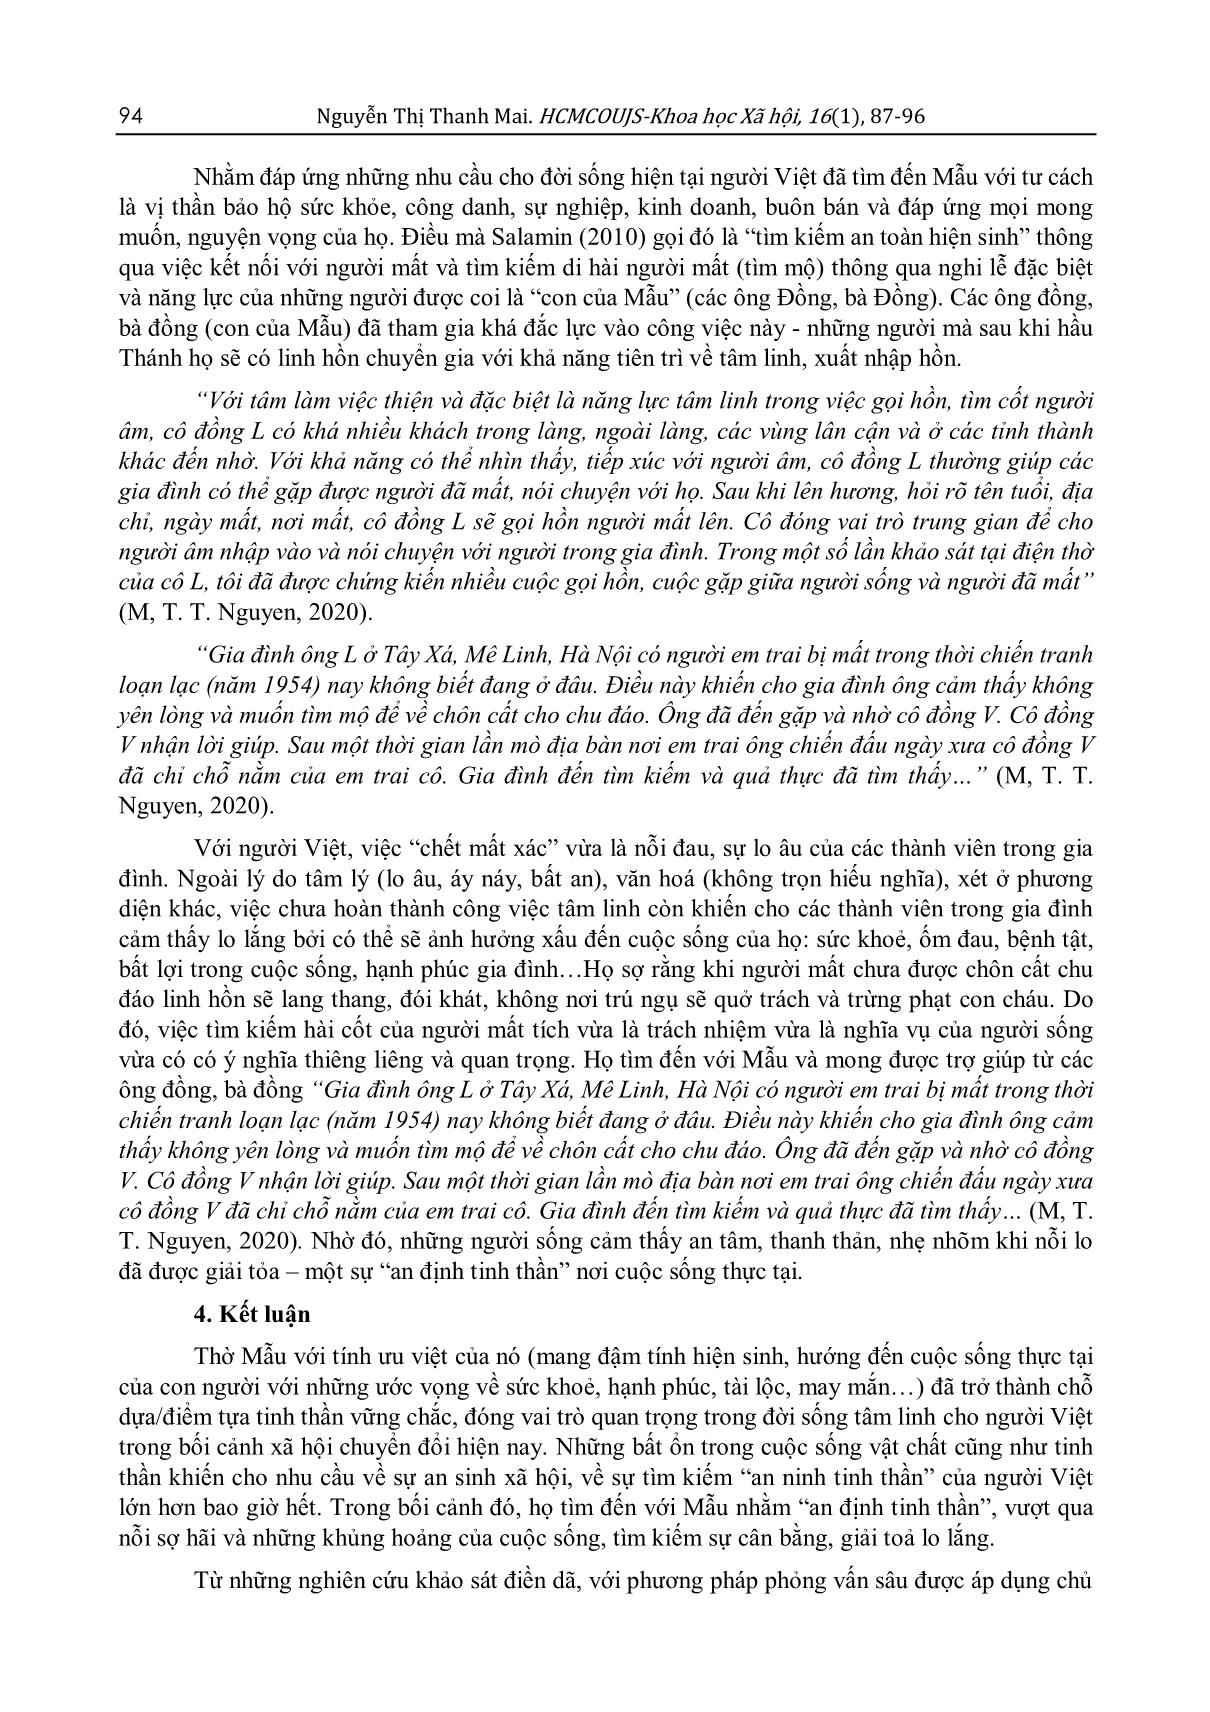 Vai trò của tín ngưỡng thờ Mẫu đối với “an ninh tinh thần” của người Việt trong đời sống xã hội hiện nay (Qua khảo sát trên địa bàn Hà Nội) trang 8